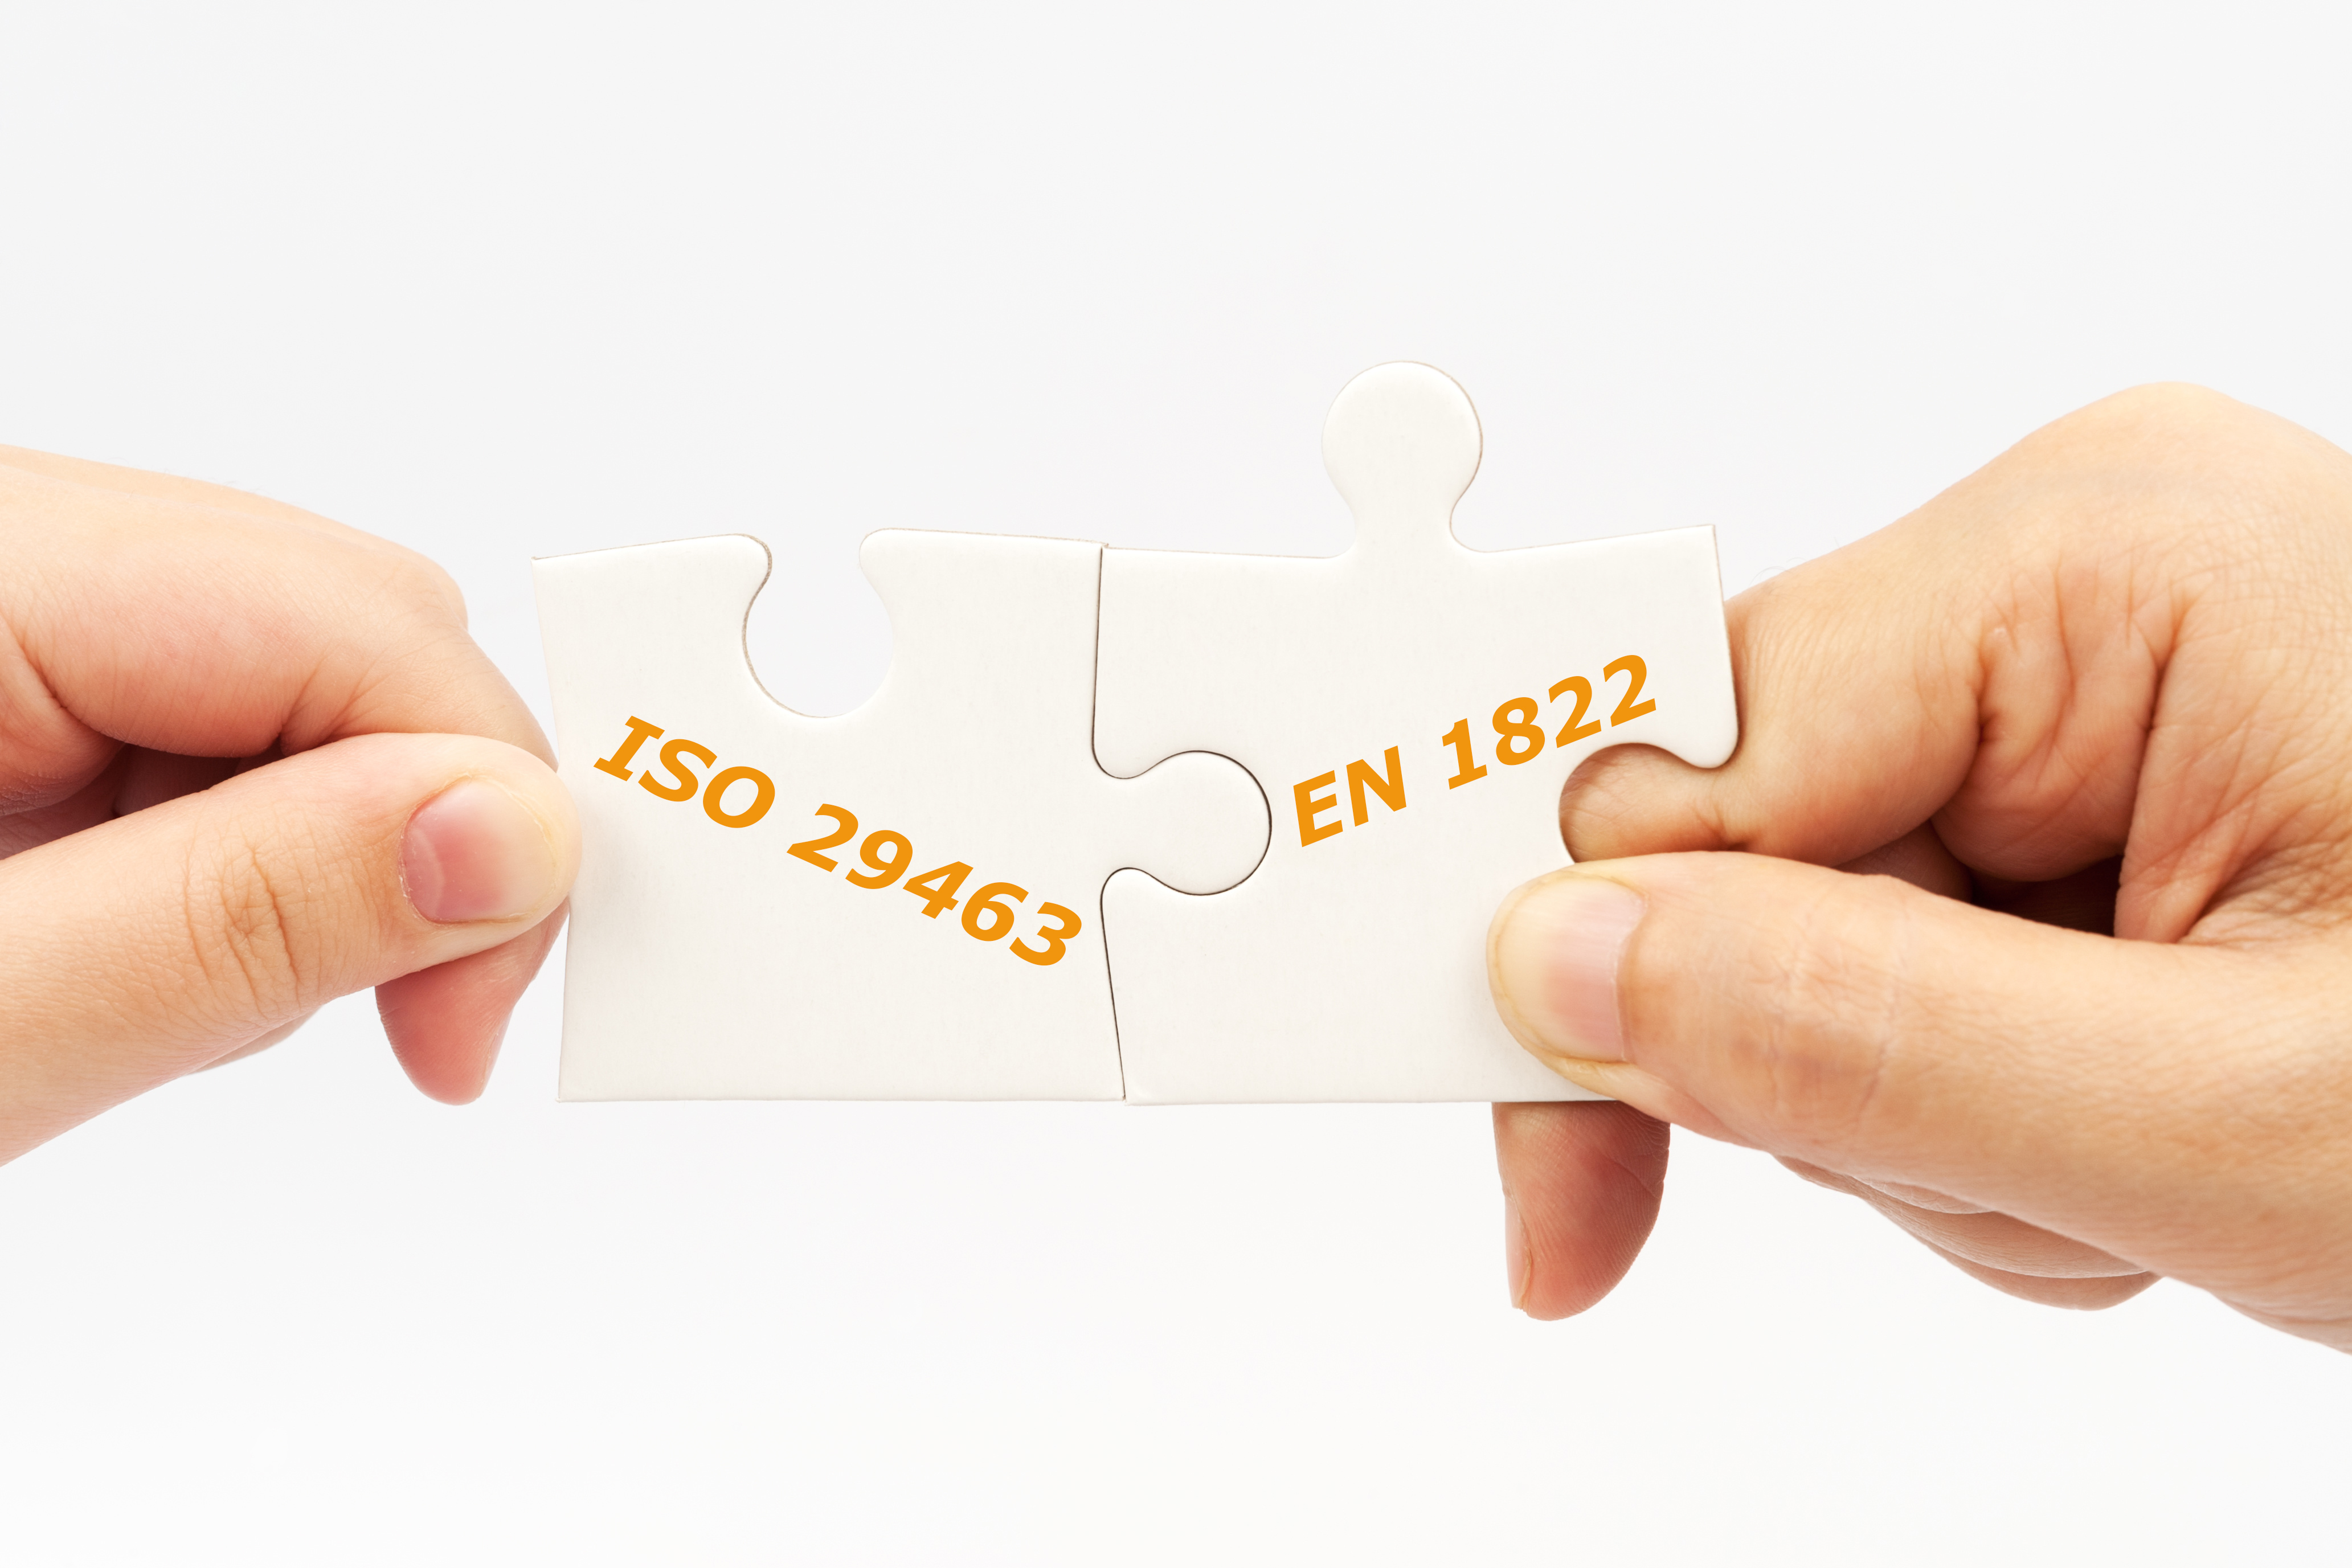 ISO 29463 & EN 1822